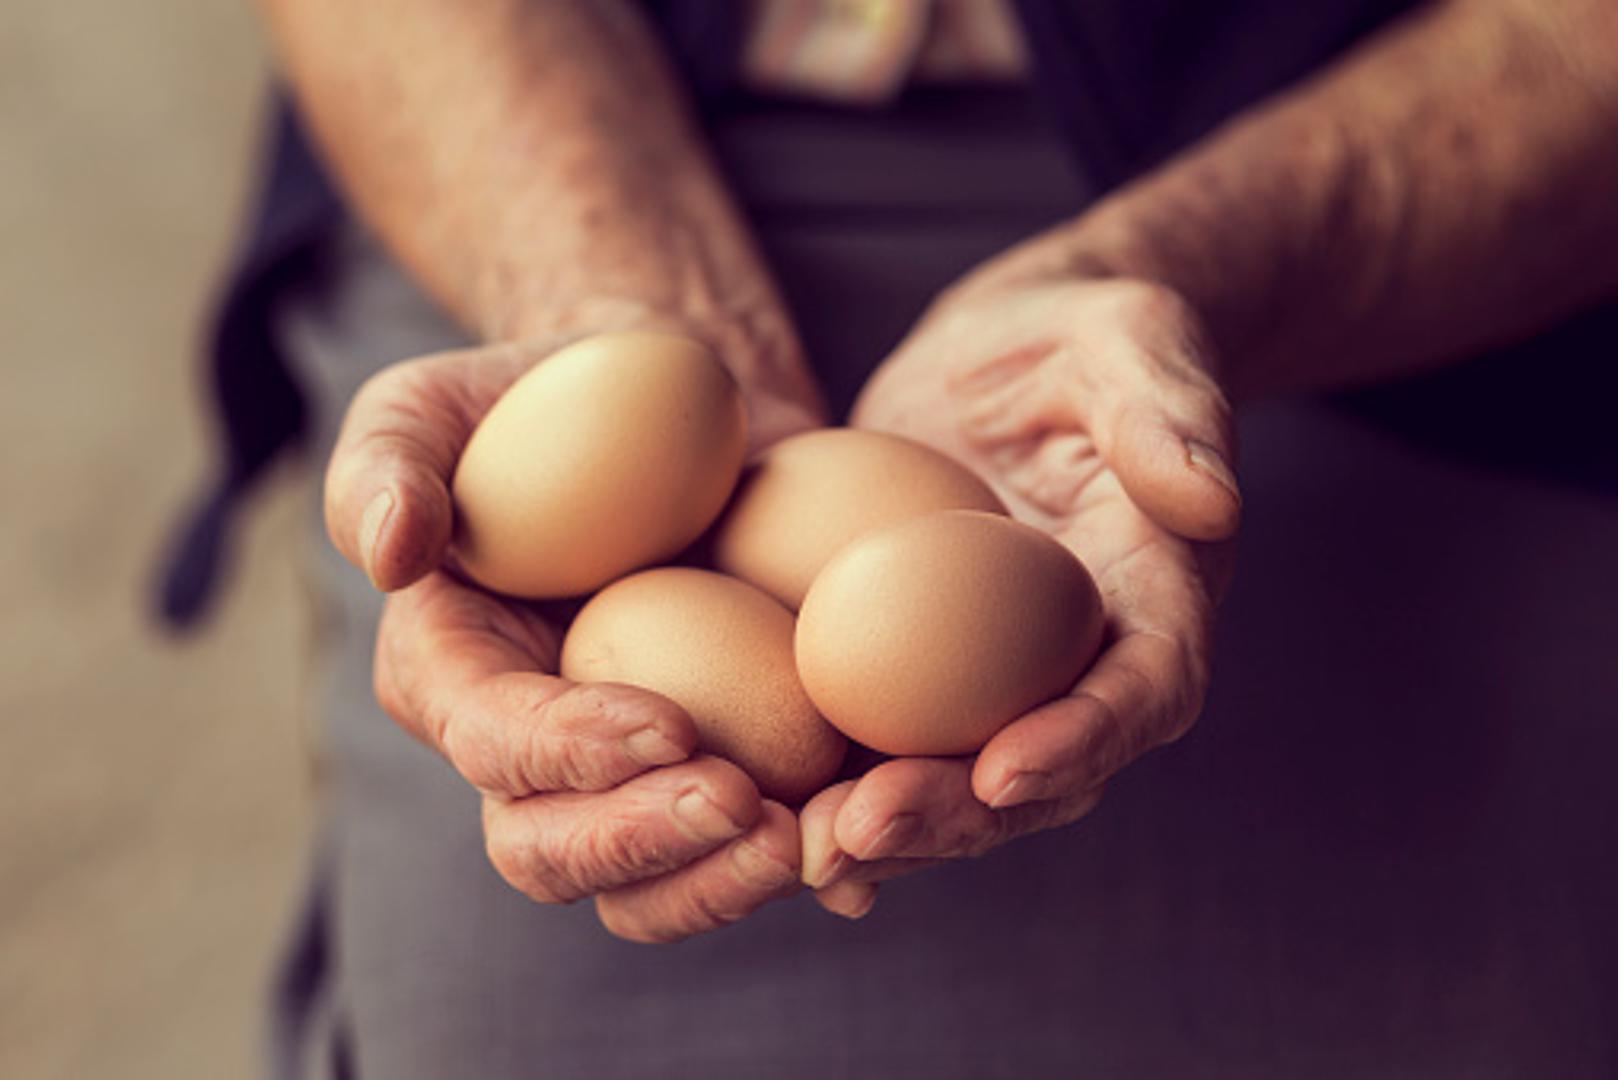 Sedam grama proteina i 85 kalorija nisu jedina prednost koju dobivamo od kokošjih jaja. Jaja su antioksidansi, sadrže zdrave masnoće i amino kiseline. Koje su sve blagodati jaja saznajte u nastavku.